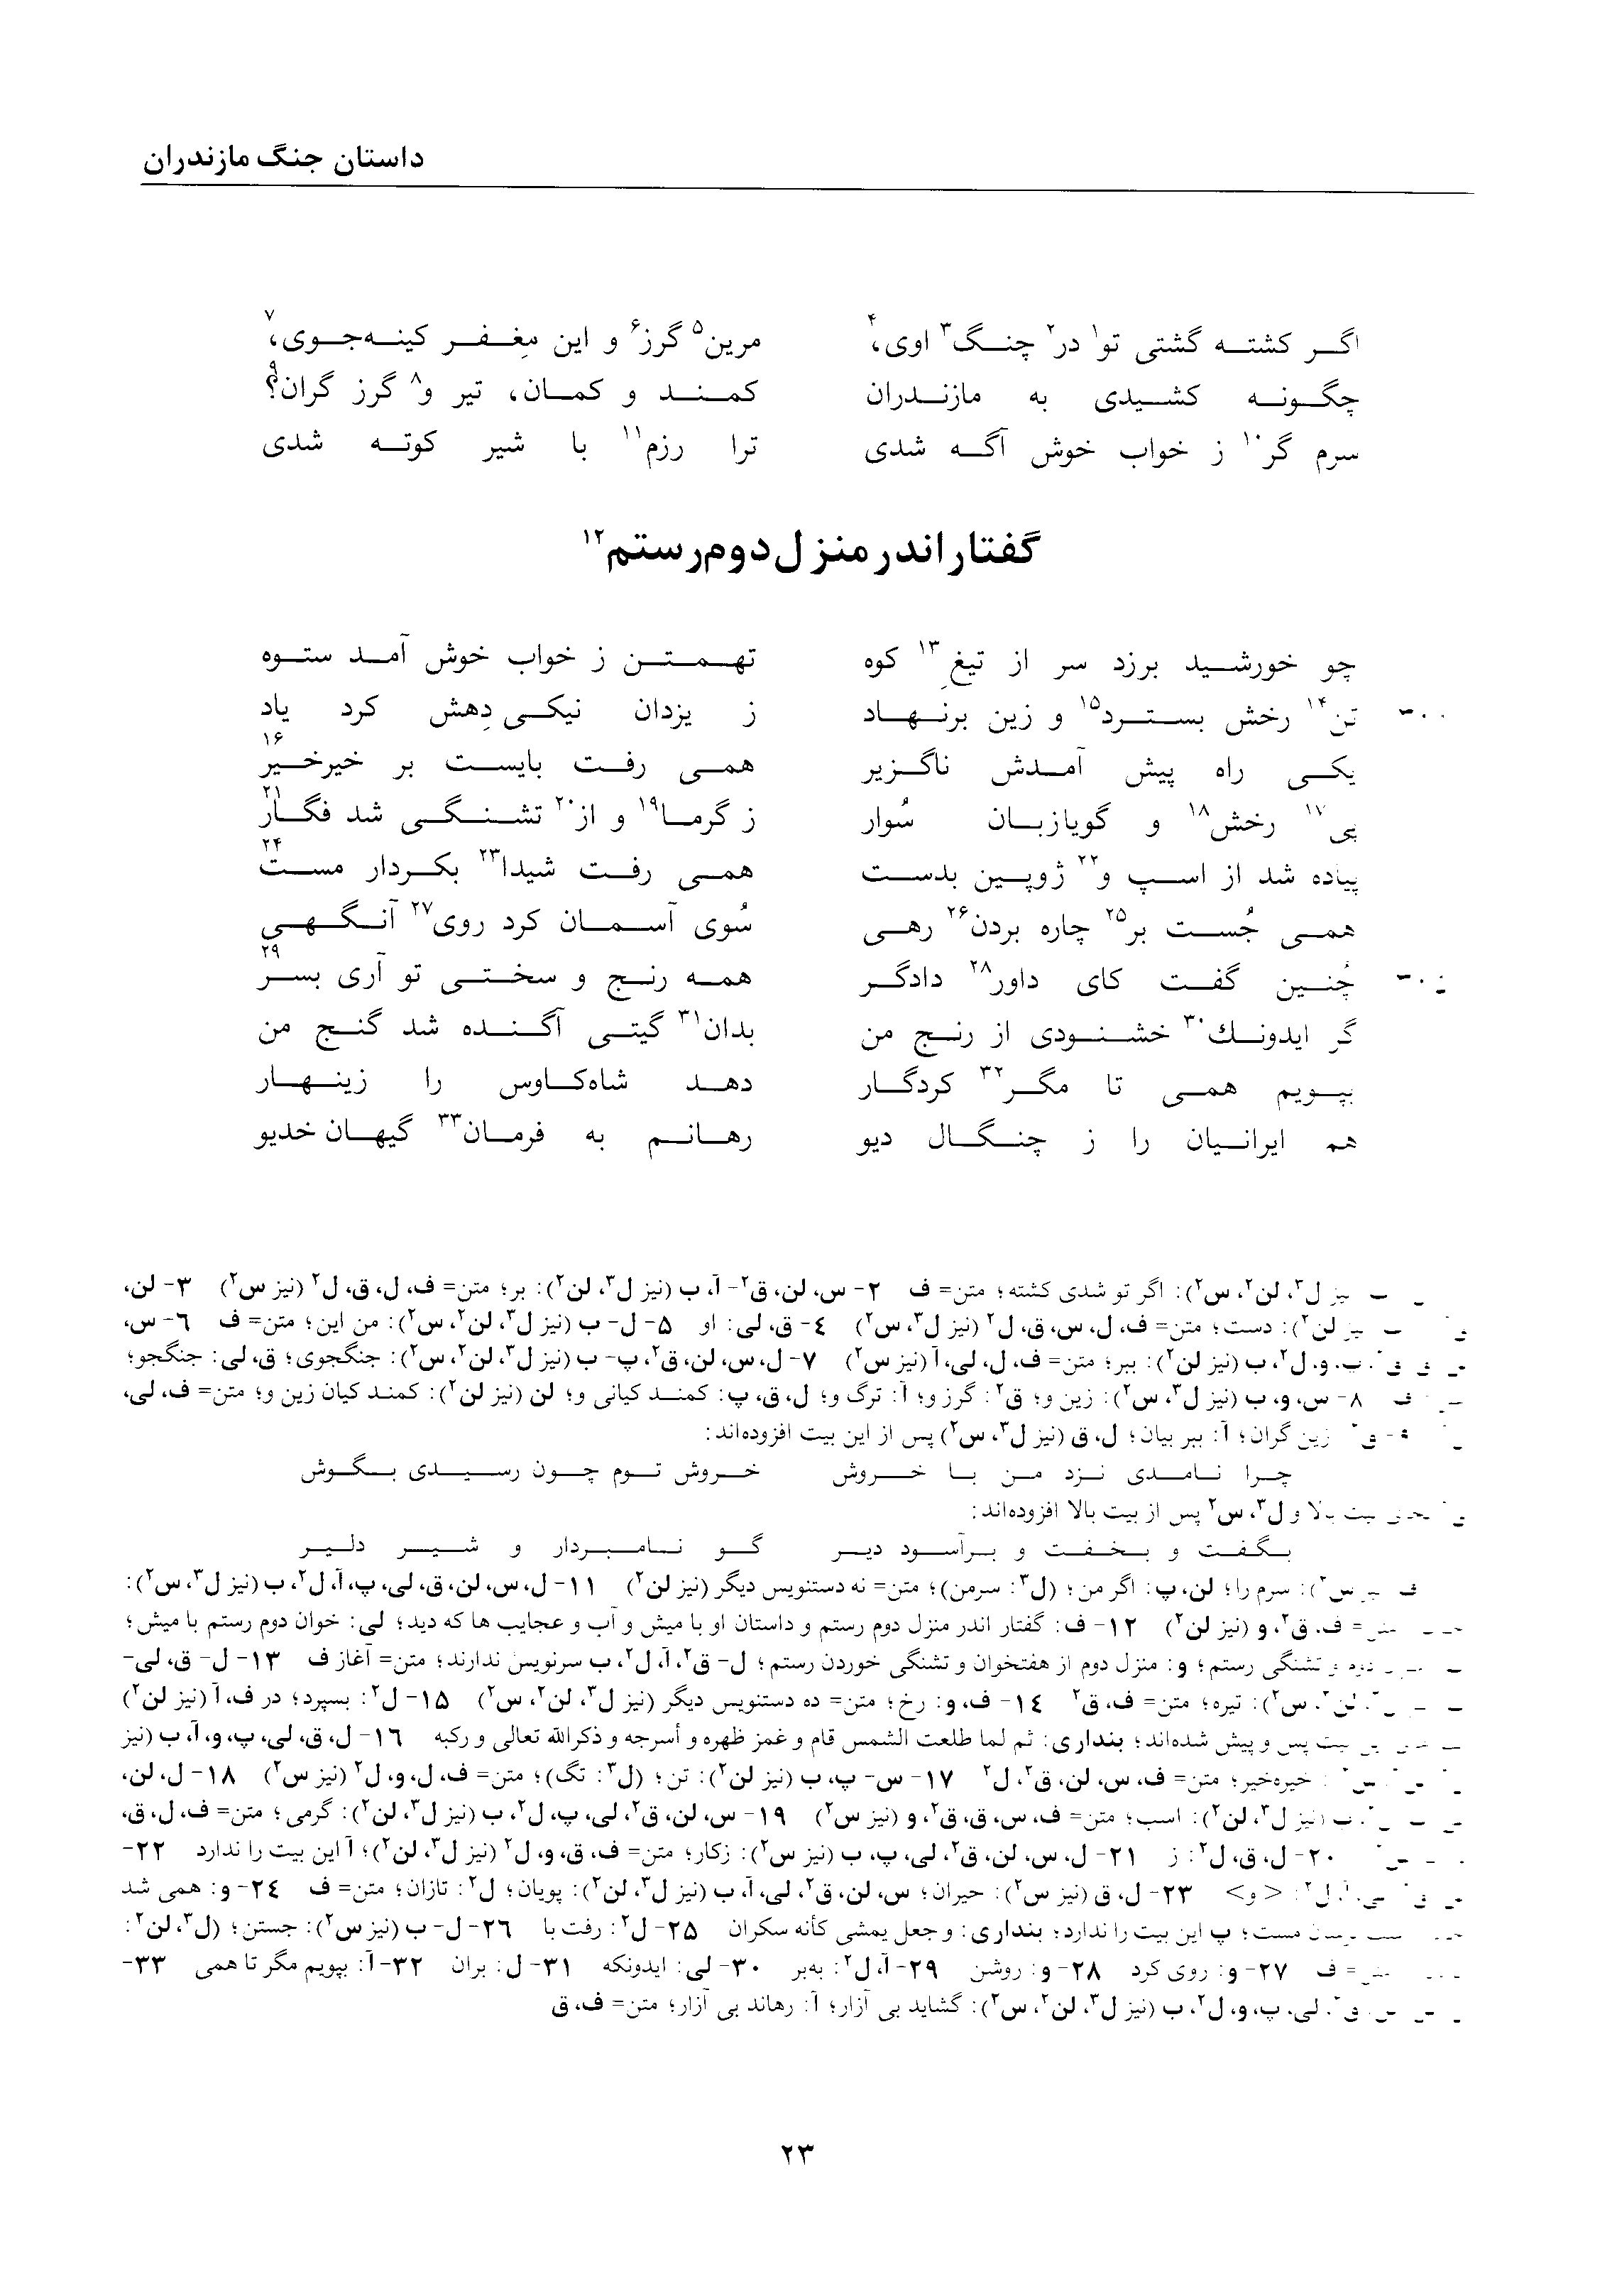 vol. 2, p. 23